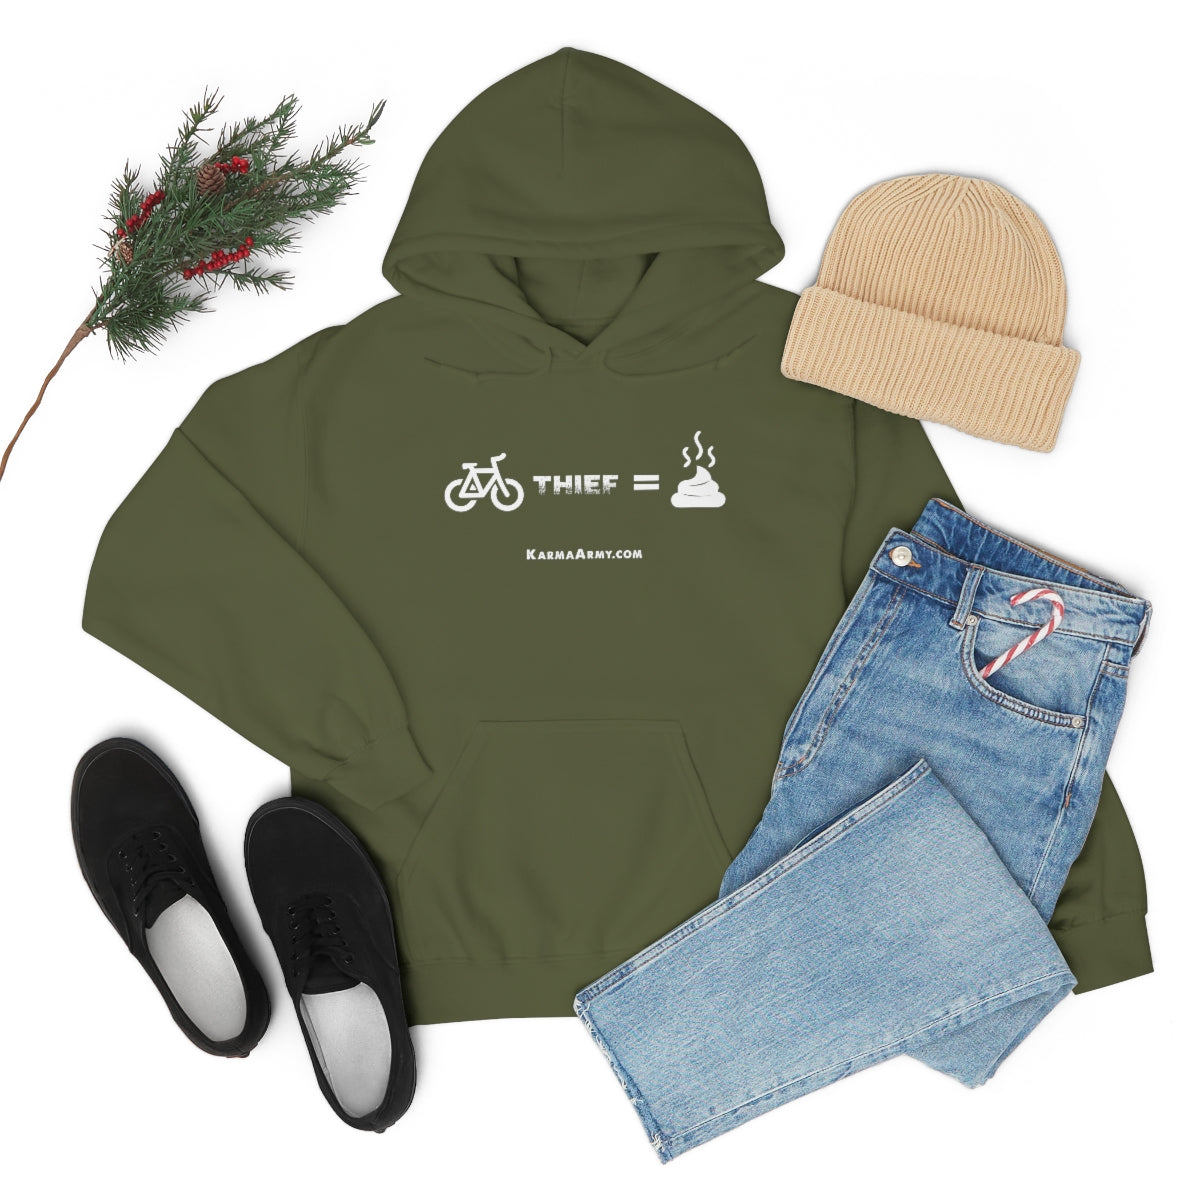 Bike Thief = Poop Unisex Heavy Blend™ Hooded Sweatshirt